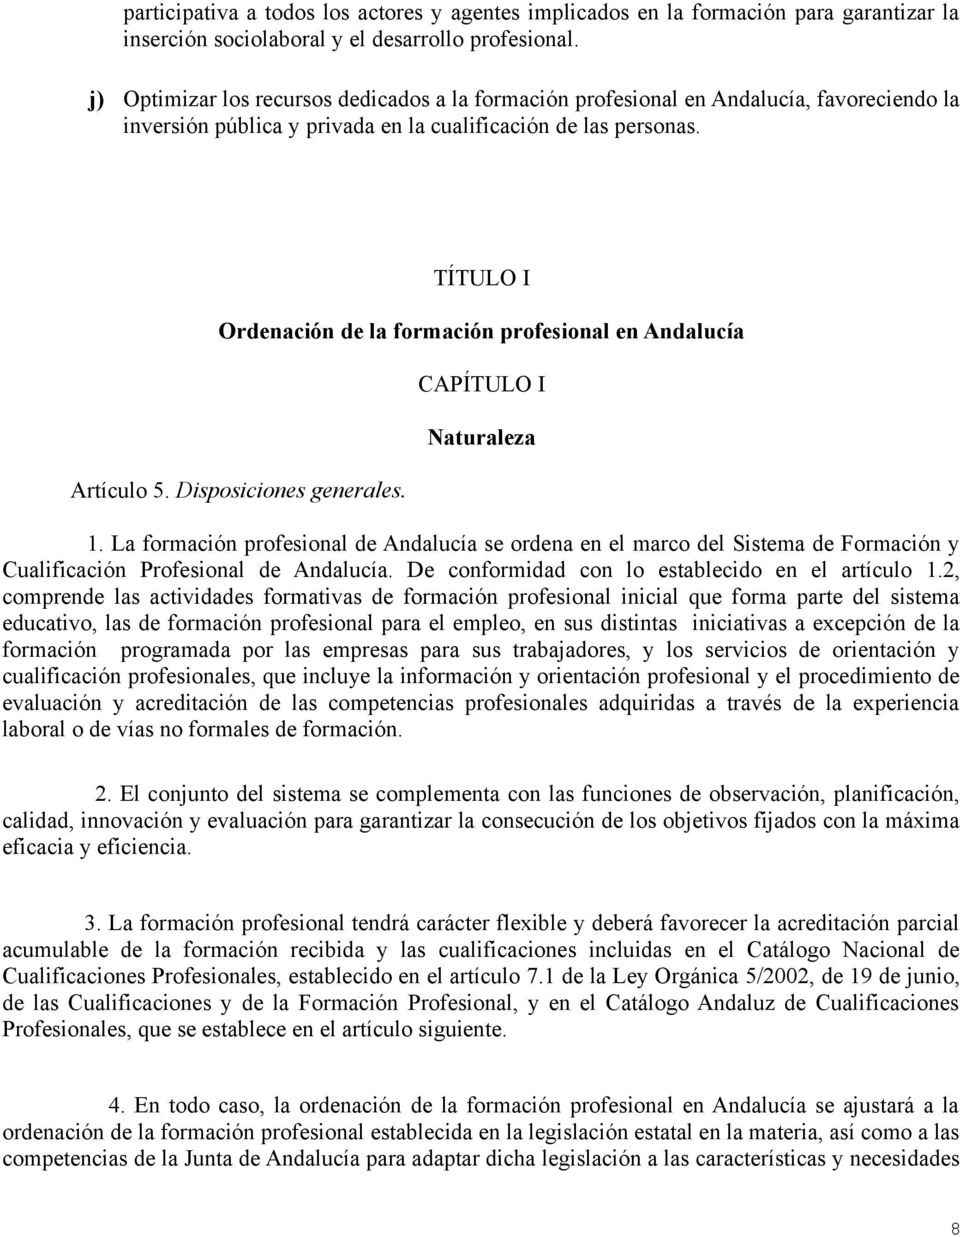 TÍTULO I Ordenación de la formación profesional en Andalucía Artículo 5. Disposiciones generales. CAPÍTULO I Naturaleza 1.